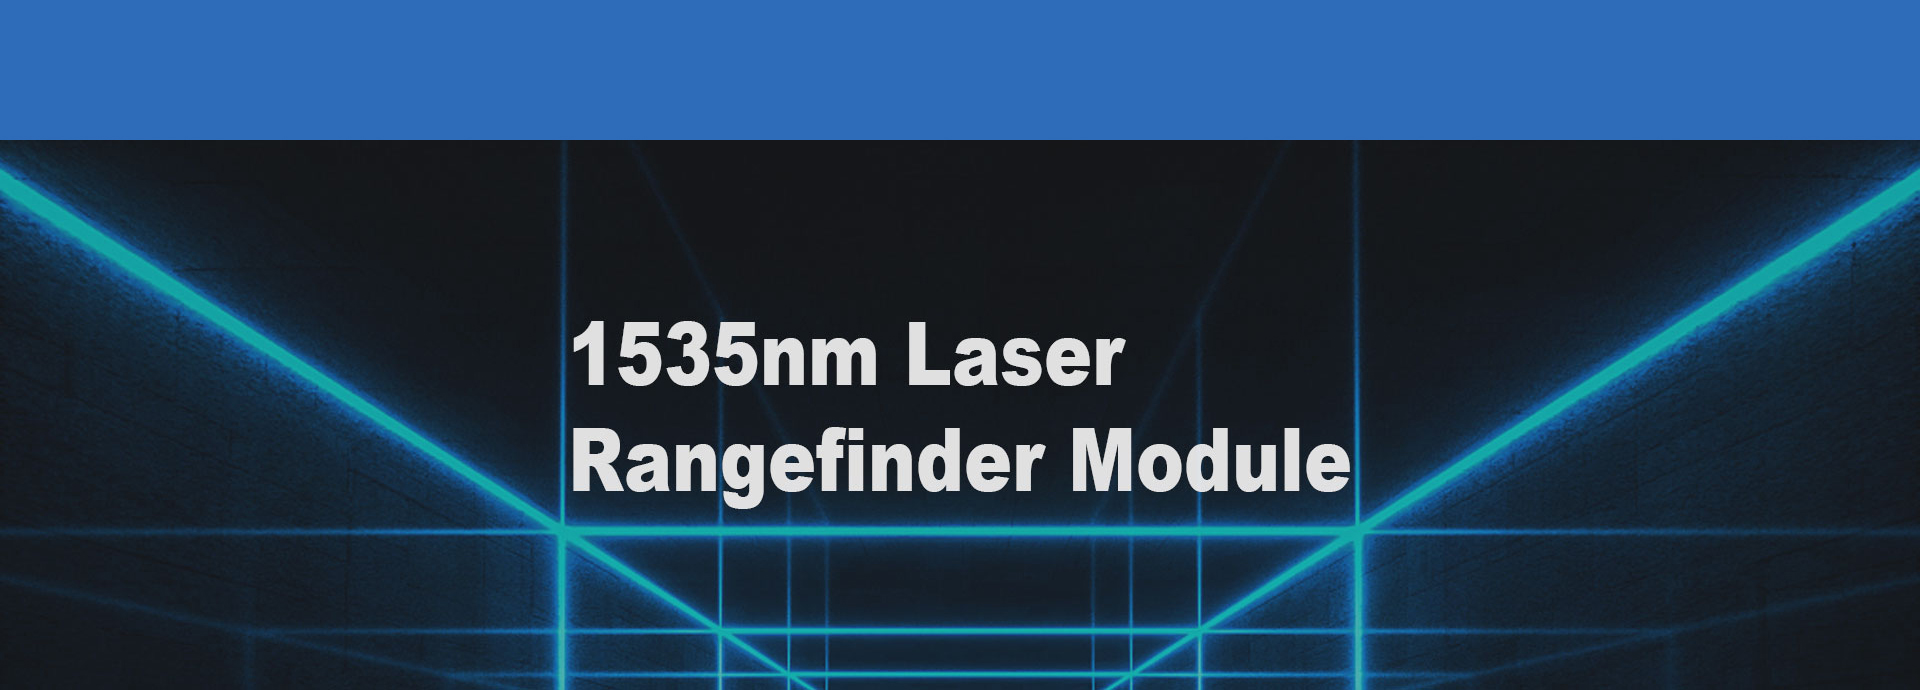 7km Laser Rangefinder Module